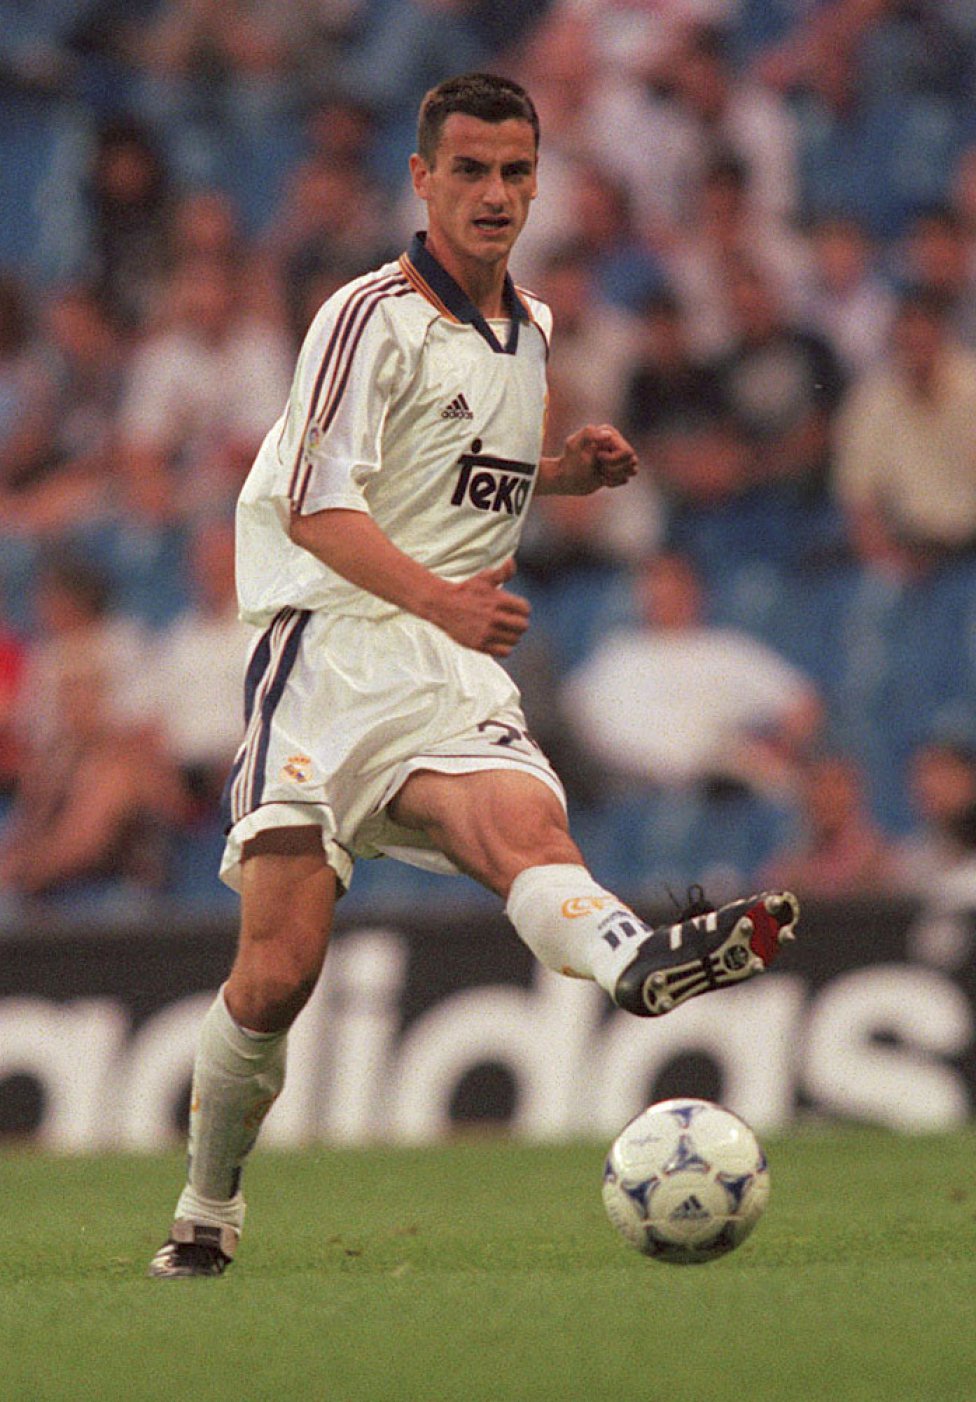 Tena Se formó en las categorías inferiores del Real Madrid antes de debutar con el primer equipo en su única temporada  (99/00). Defendió la camiseta del Getafe desde el 2002 hasta el 2008. 